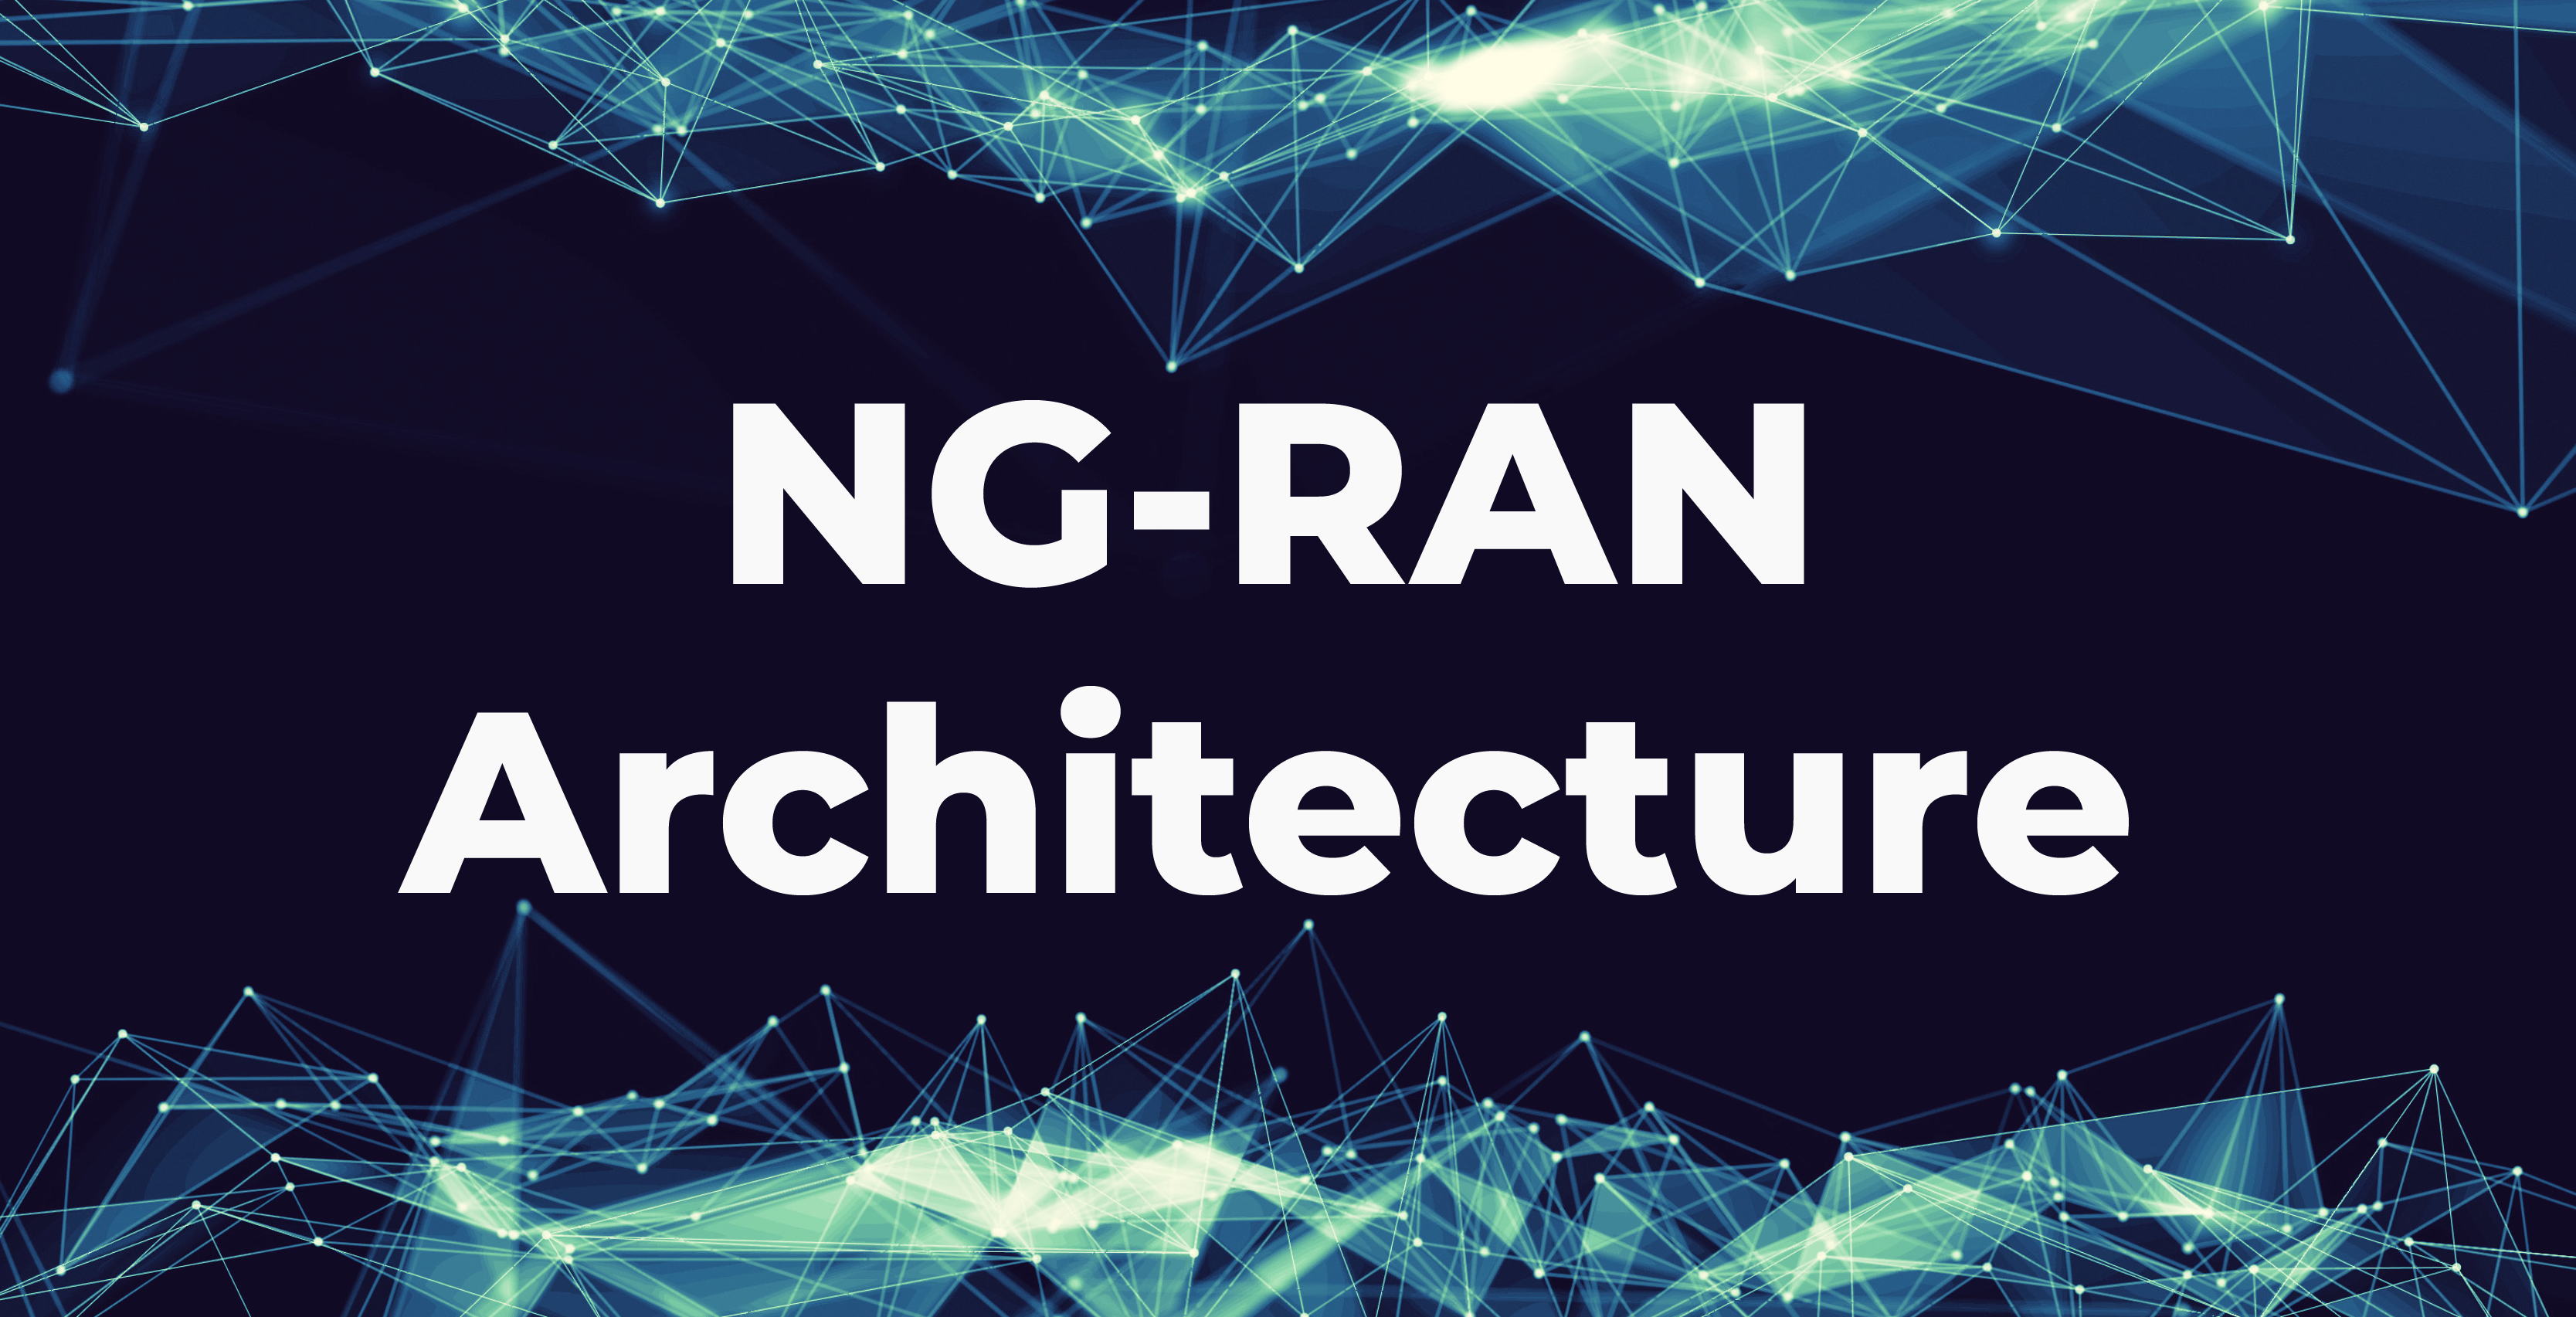 NG-RAN Architecture